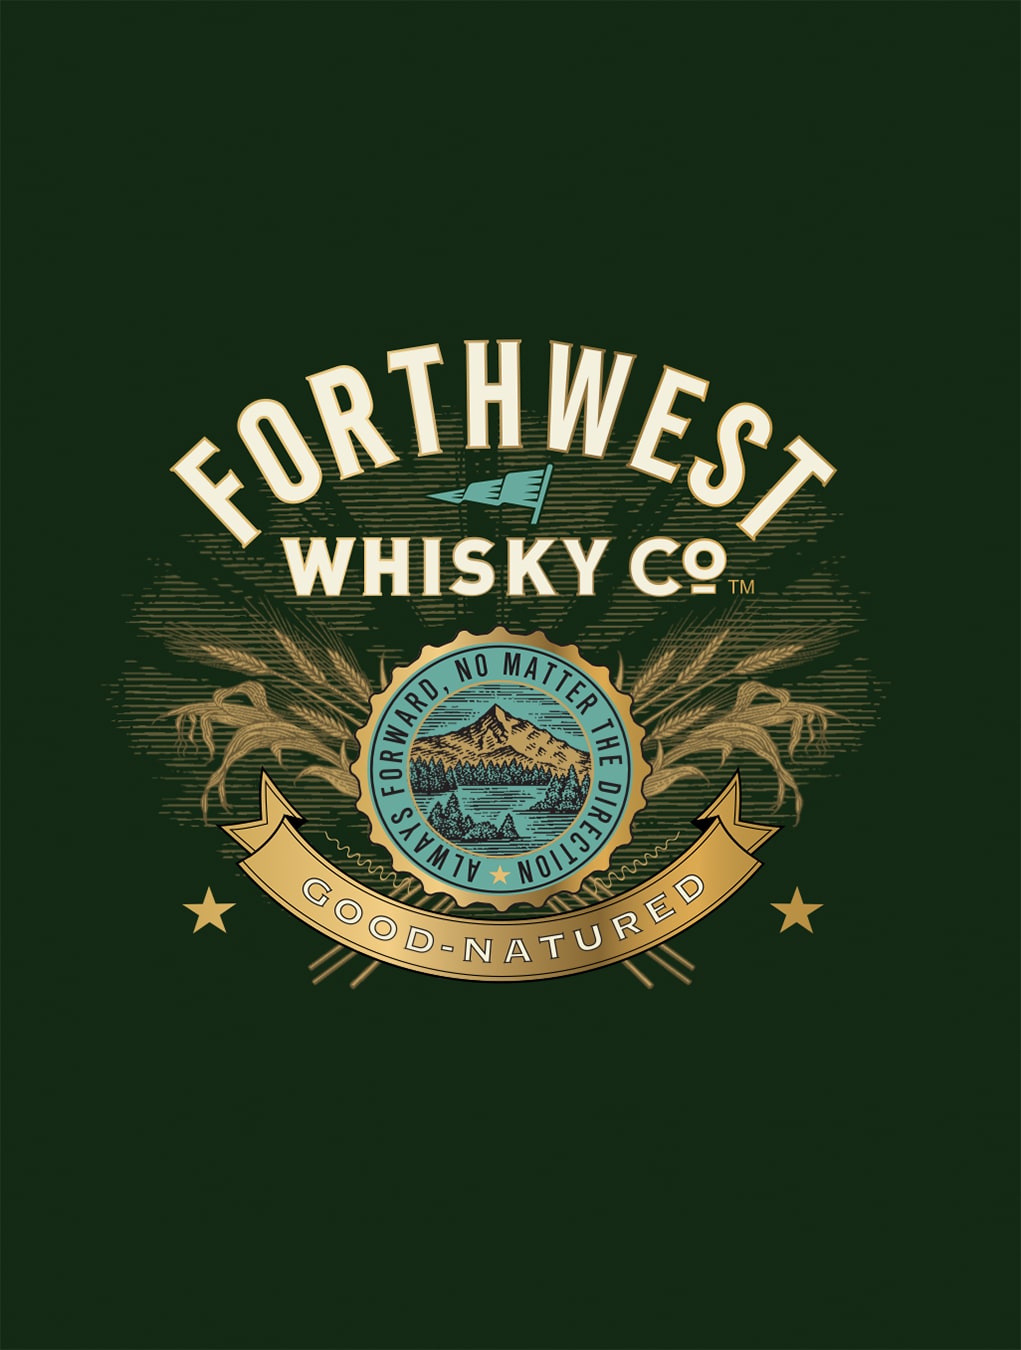 Forthwest Whisky Co. brand mark logo design